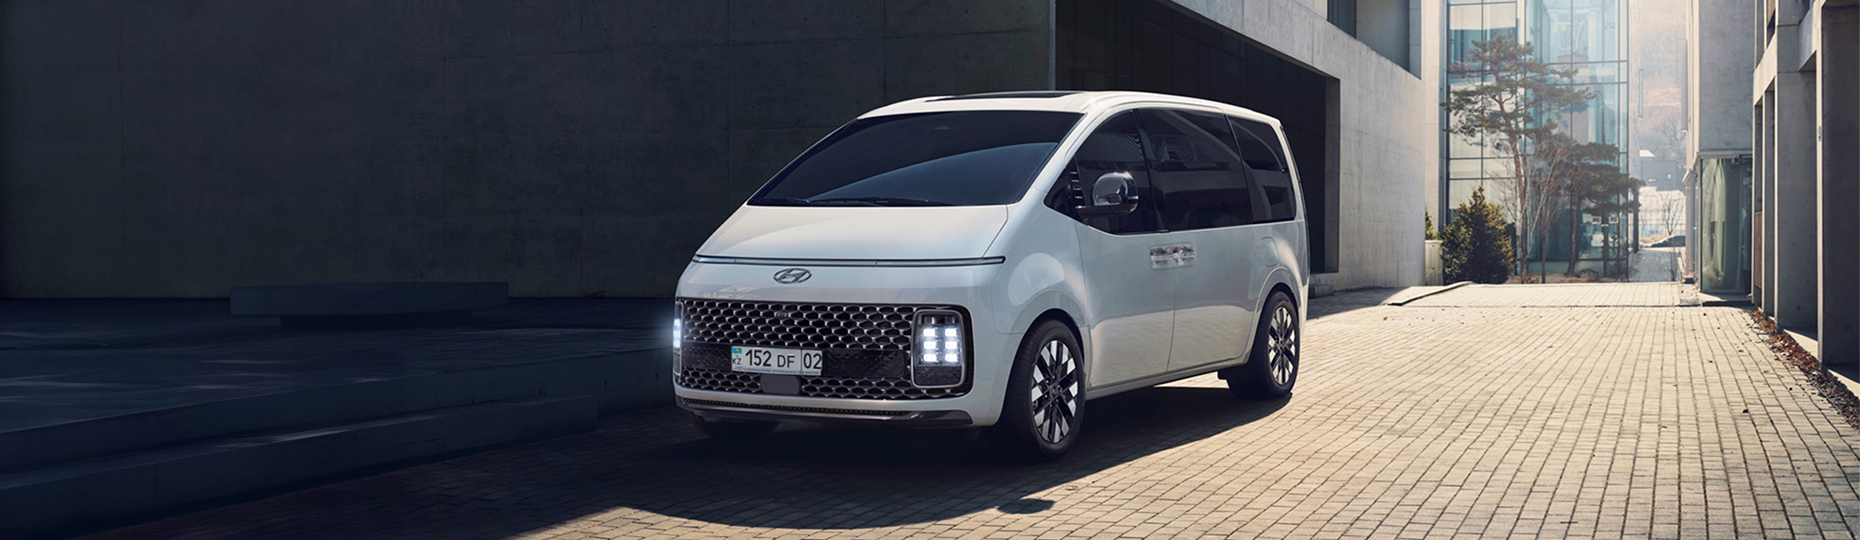 Комфорт нового Hyundai Staria | Официальный дилер в Алматы